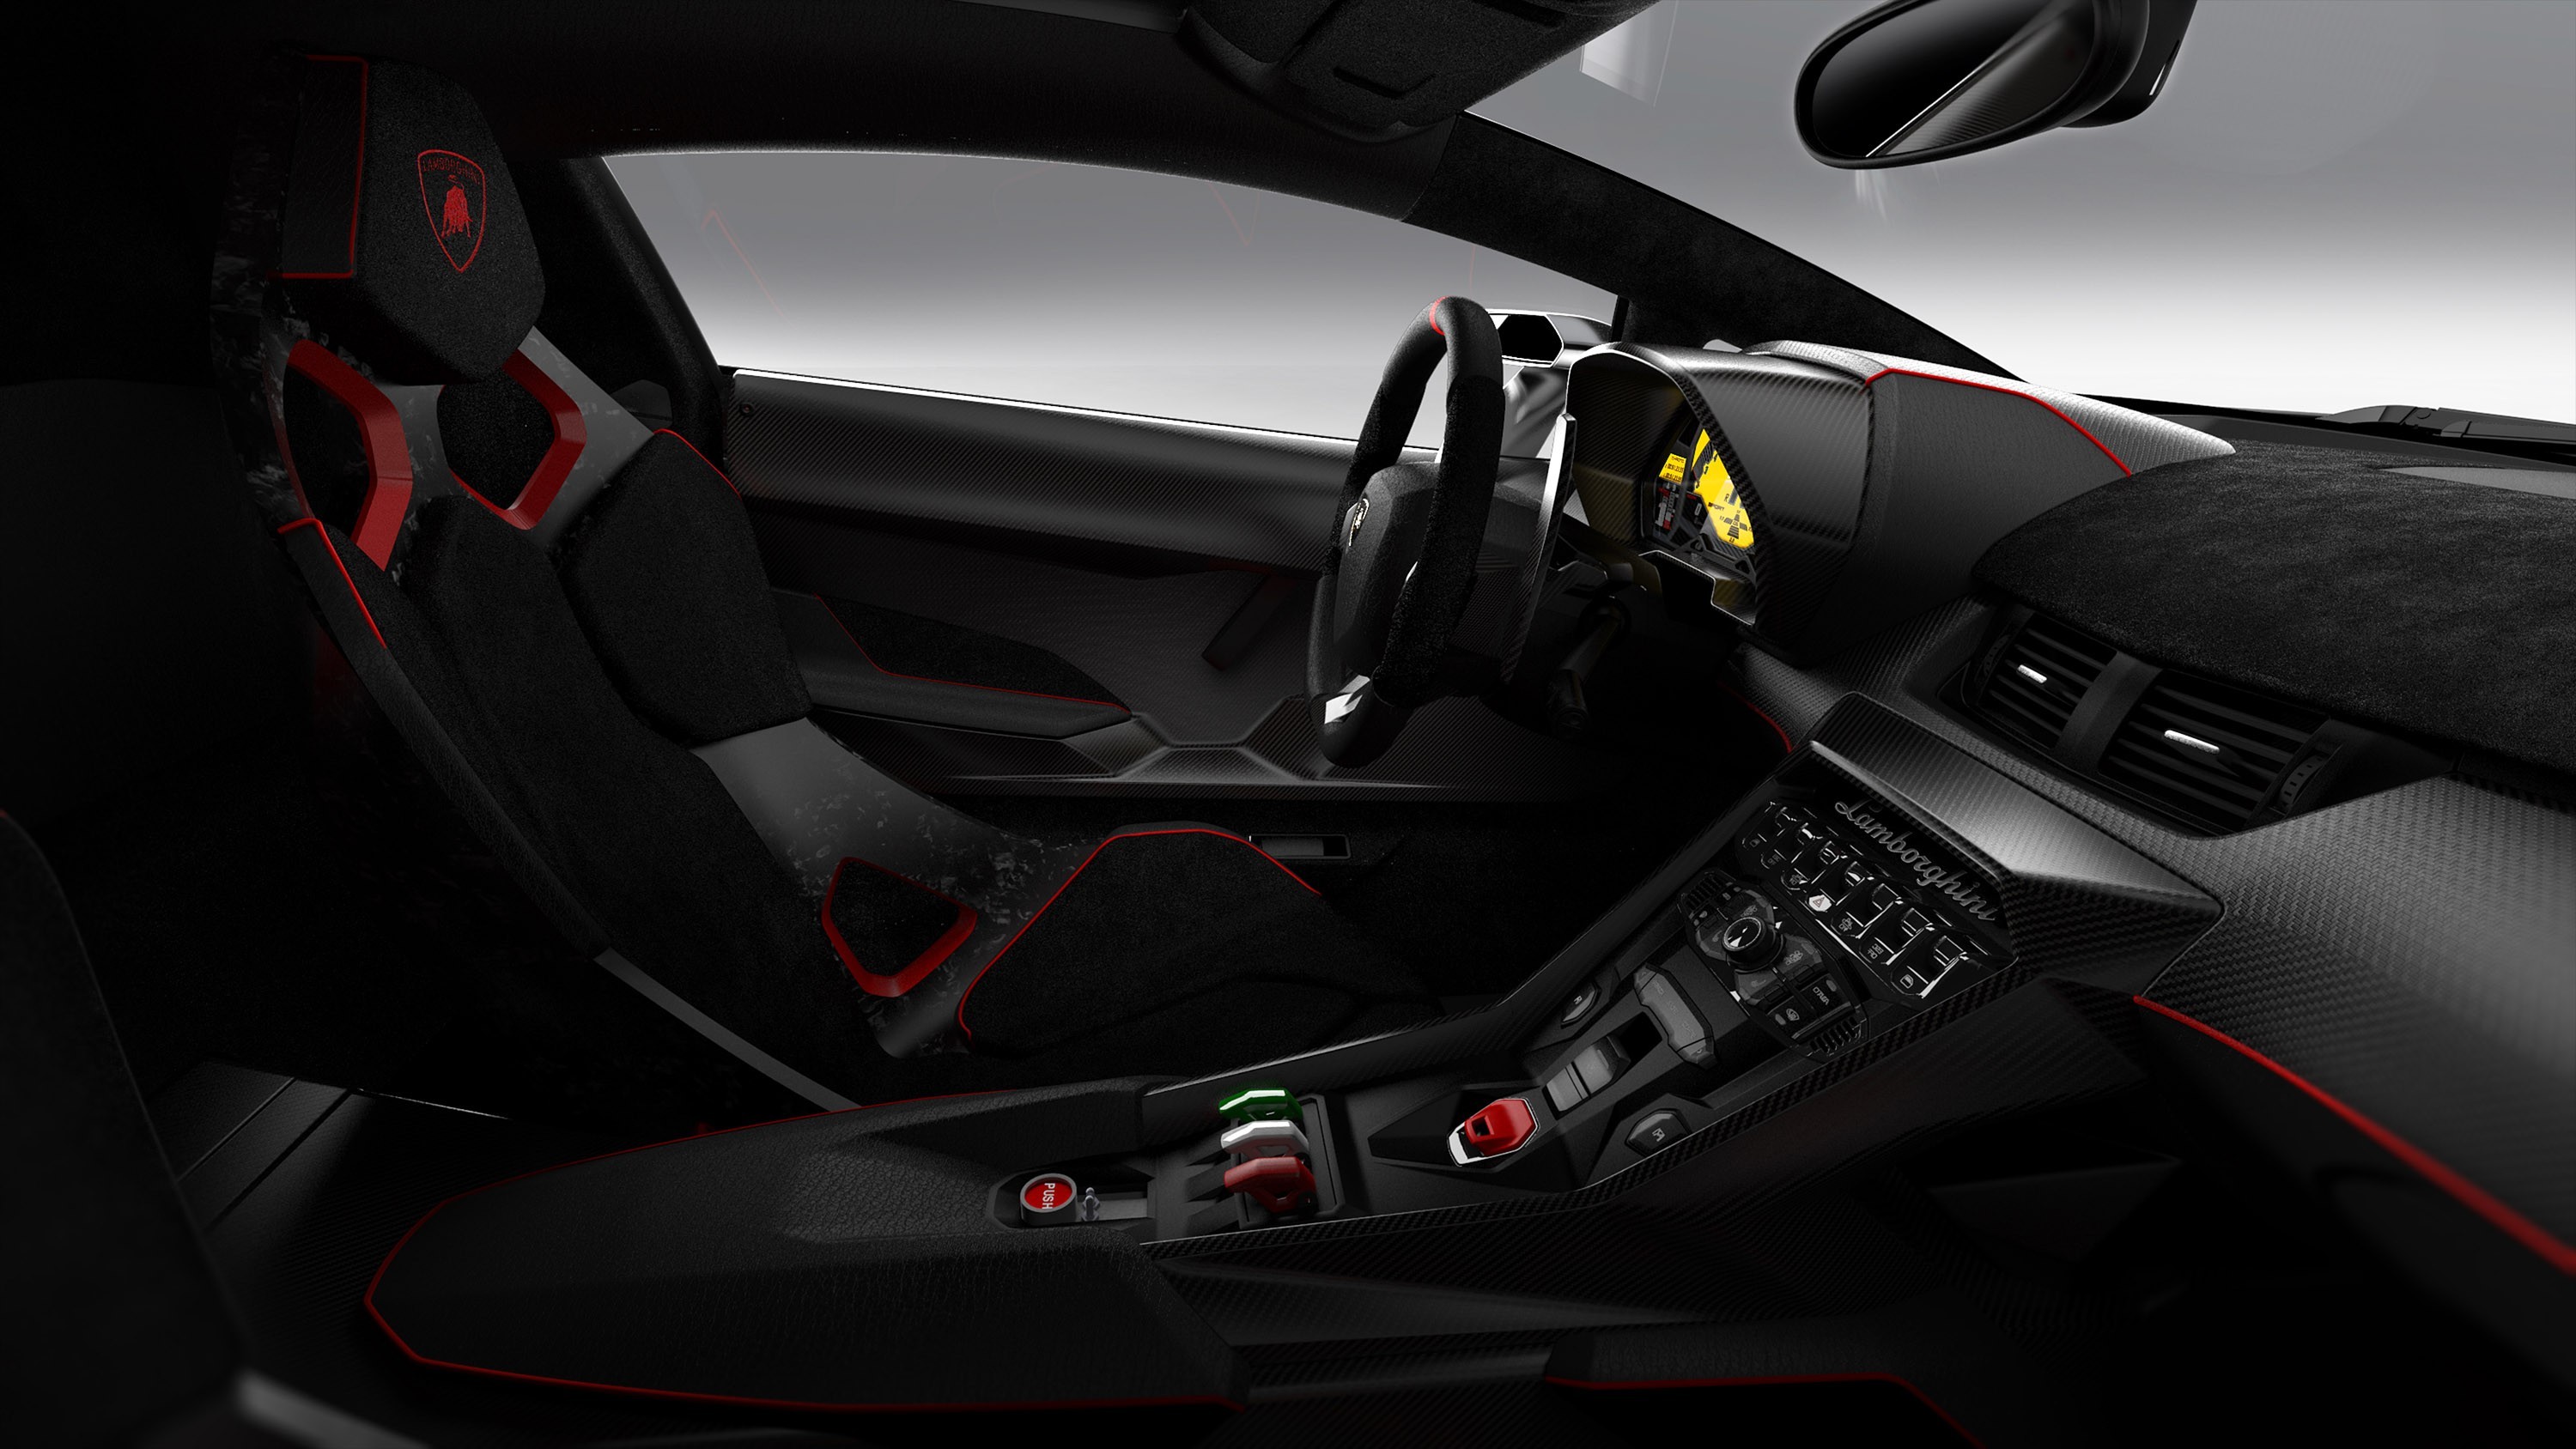 General 3000x1688 Lamborghini sports car car Lamborghini Veneno supercars vehicle car interior